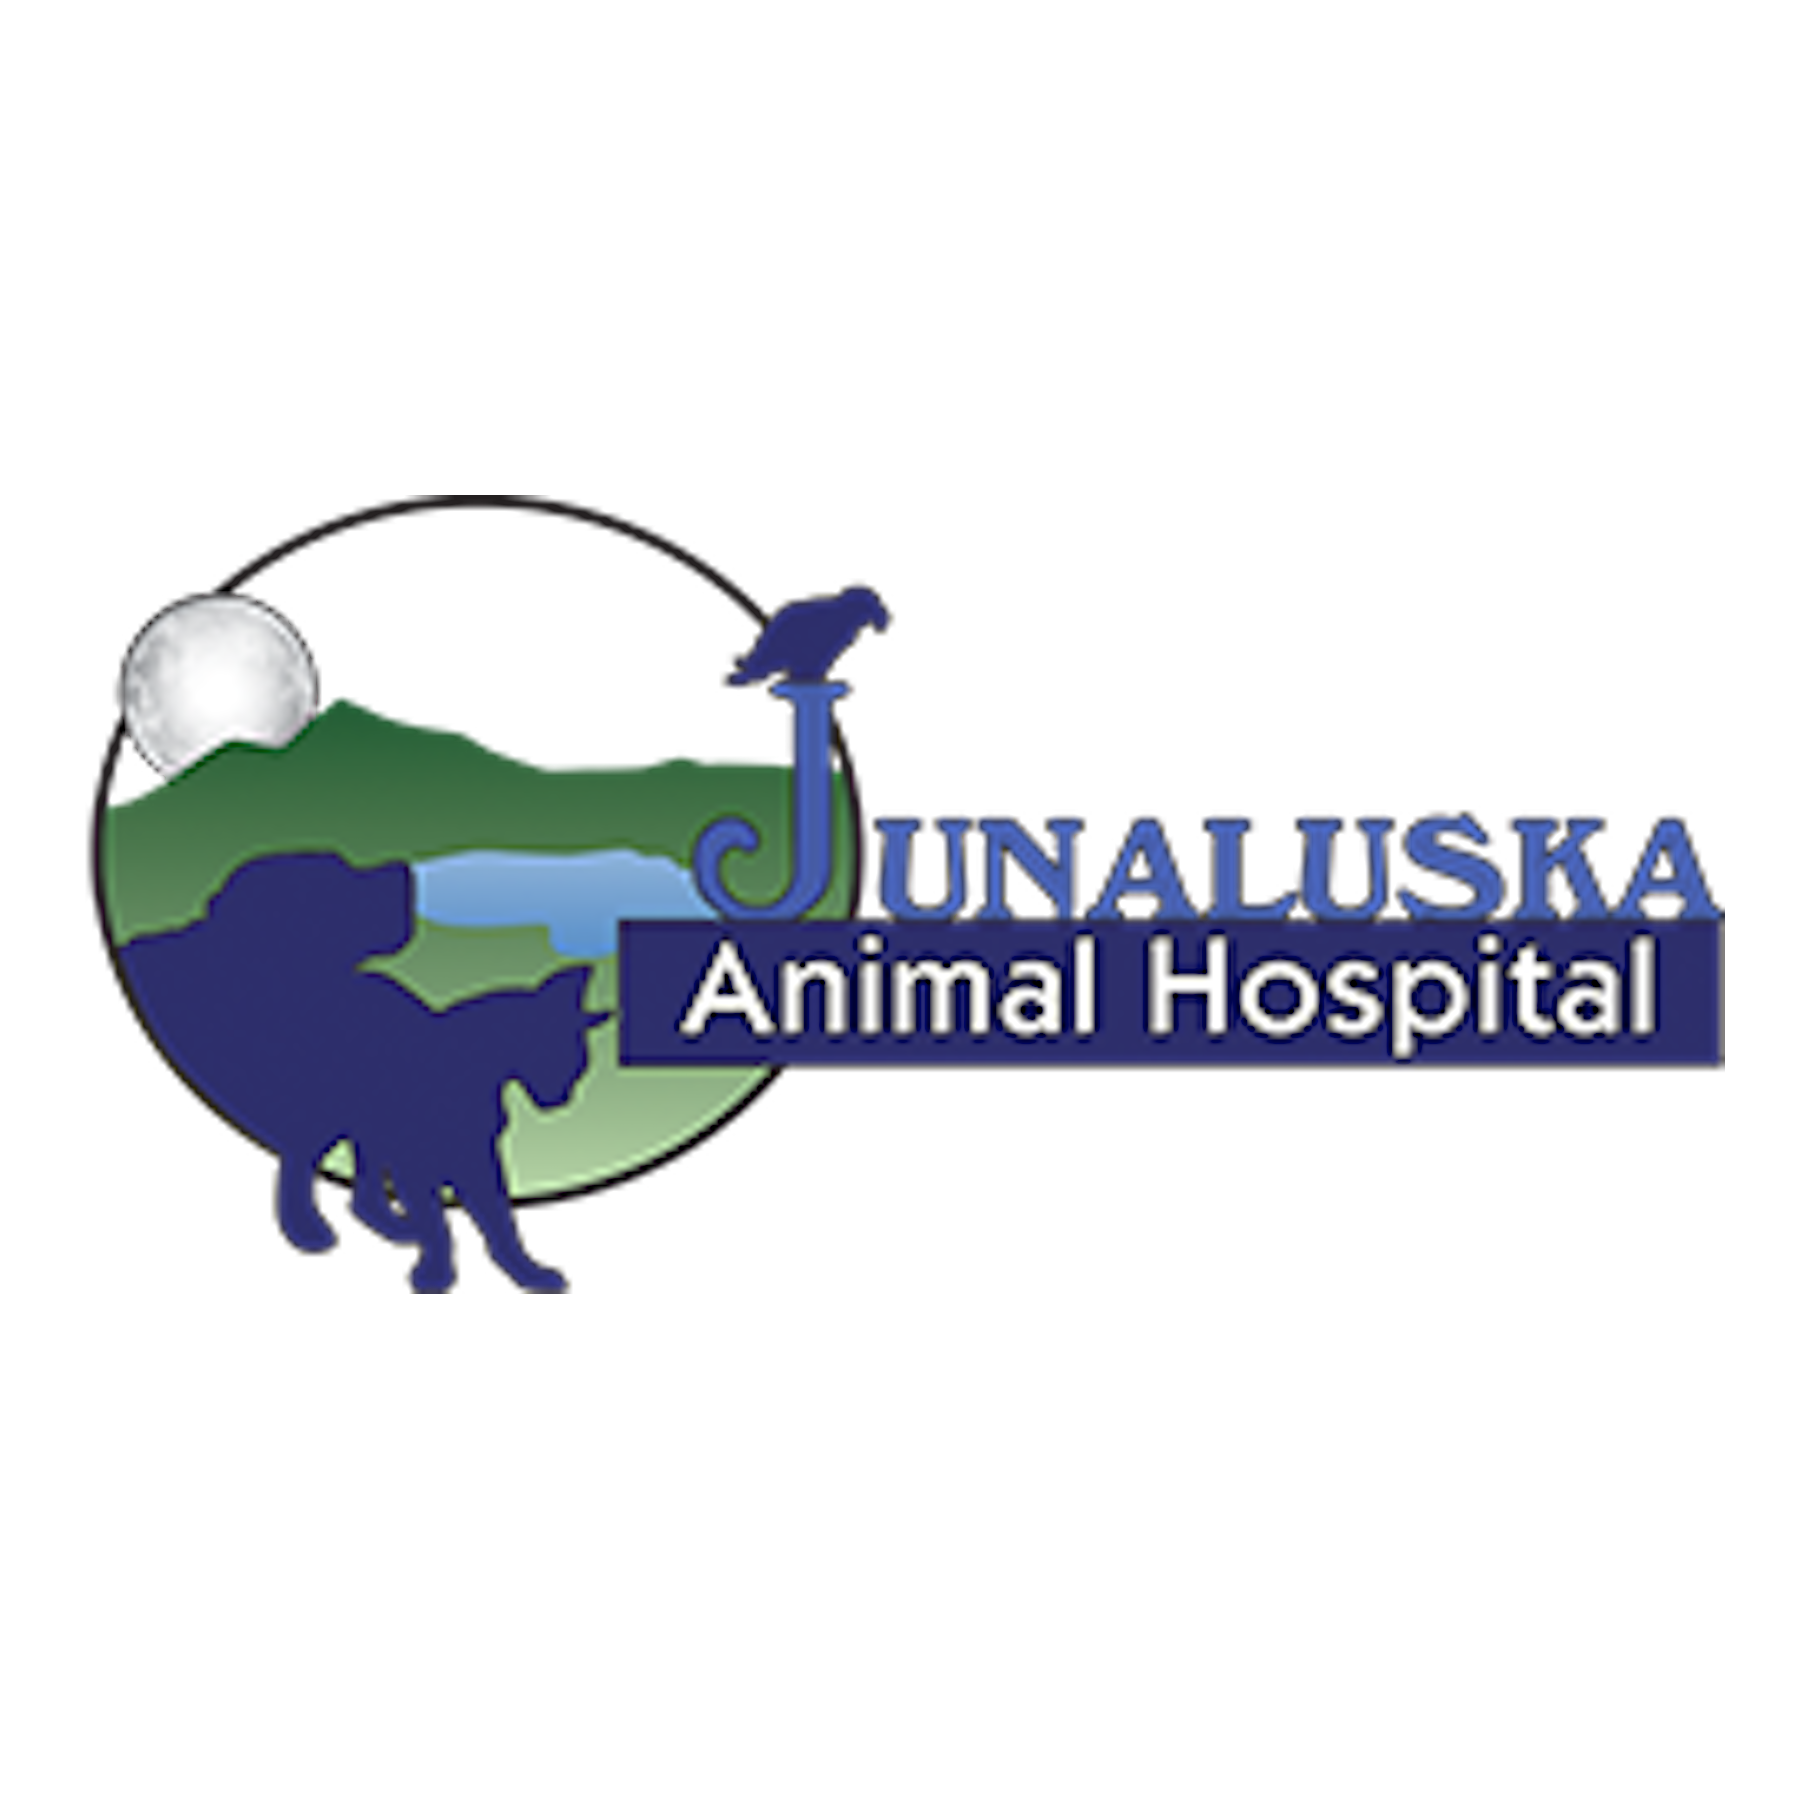 Junaluska Animal Hospital